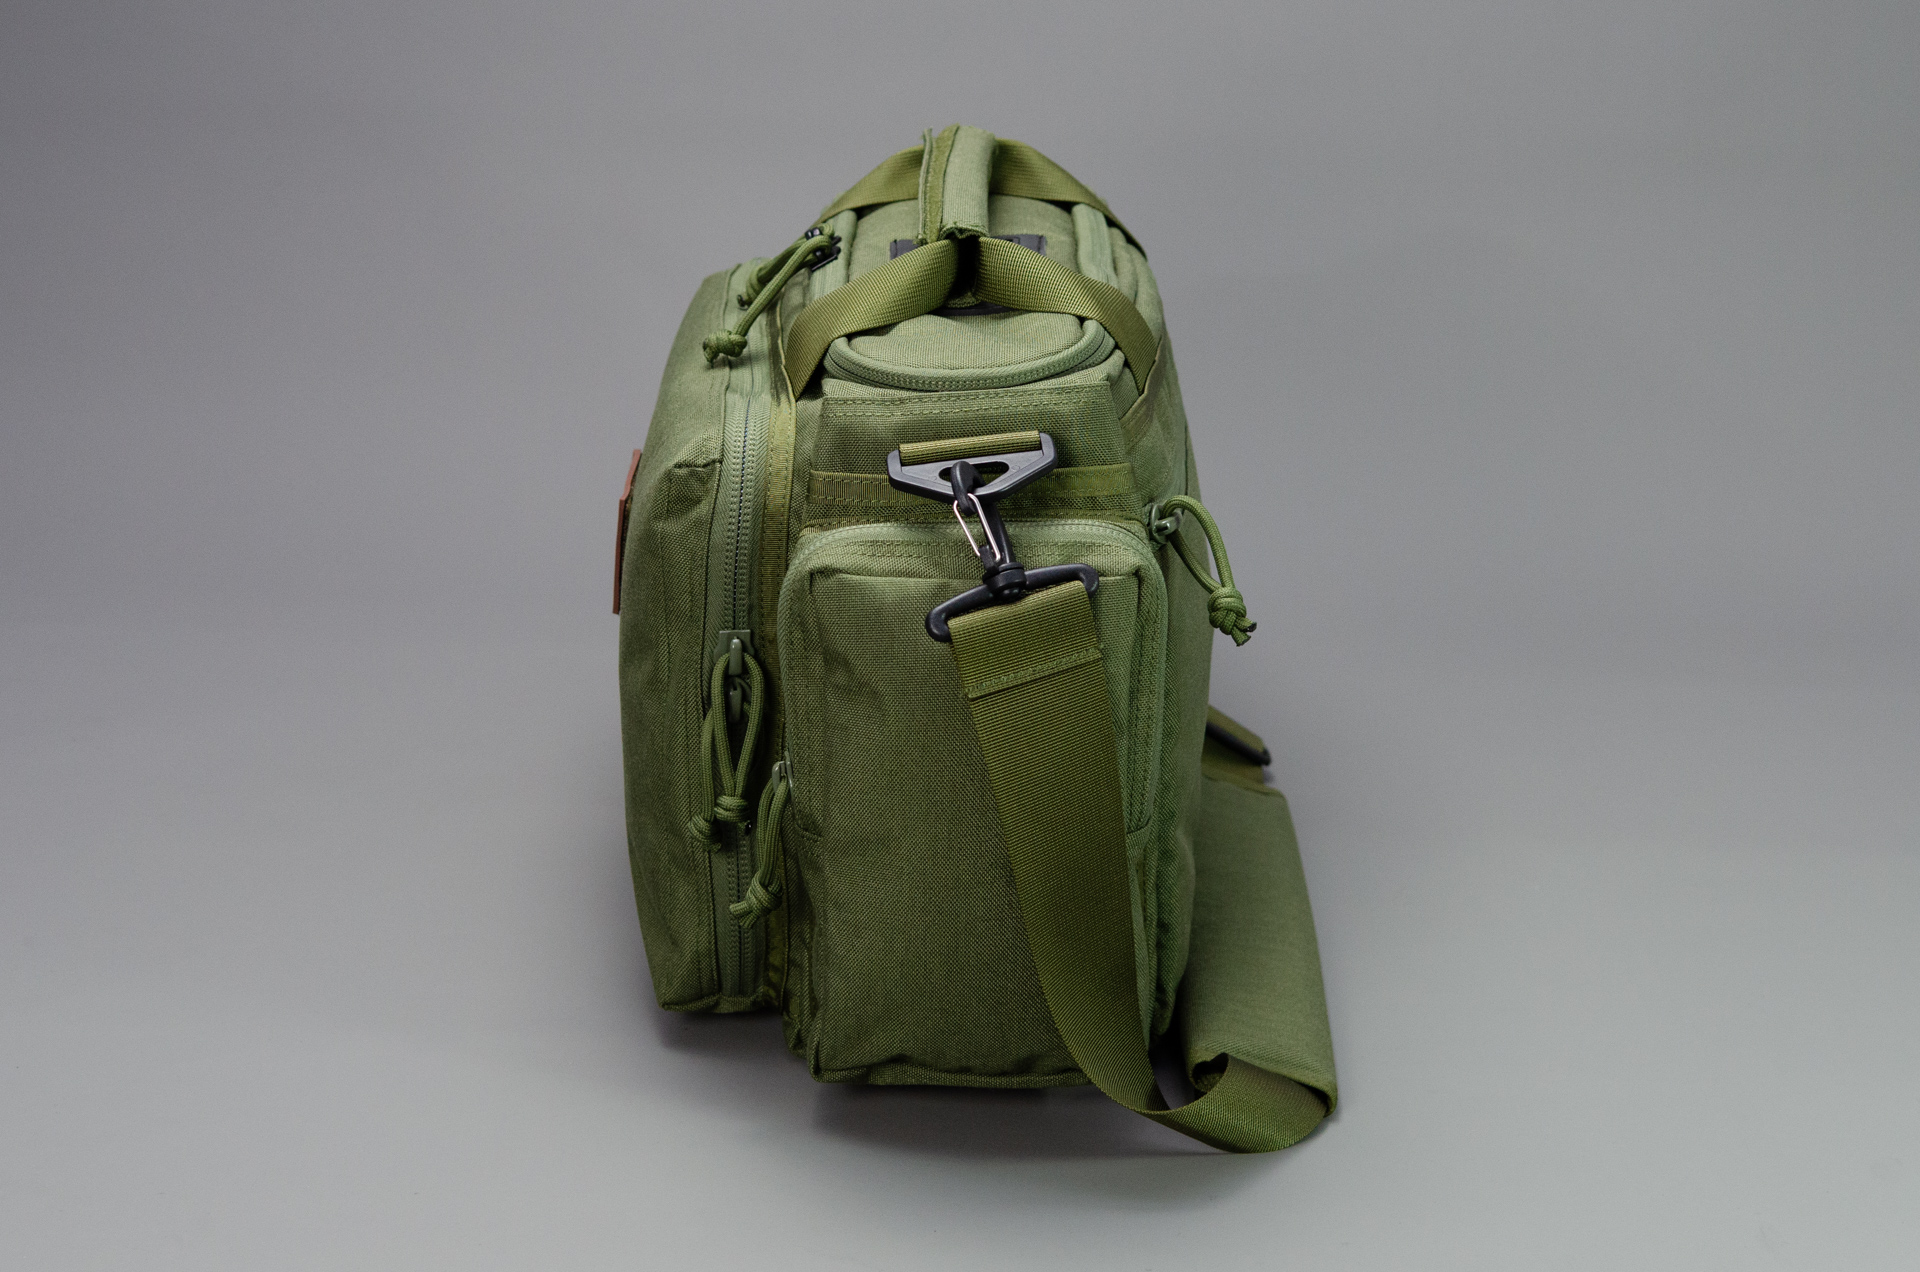 AUMTISC Taktisch Tasche Range-Bag Waffentasche-Pistolen